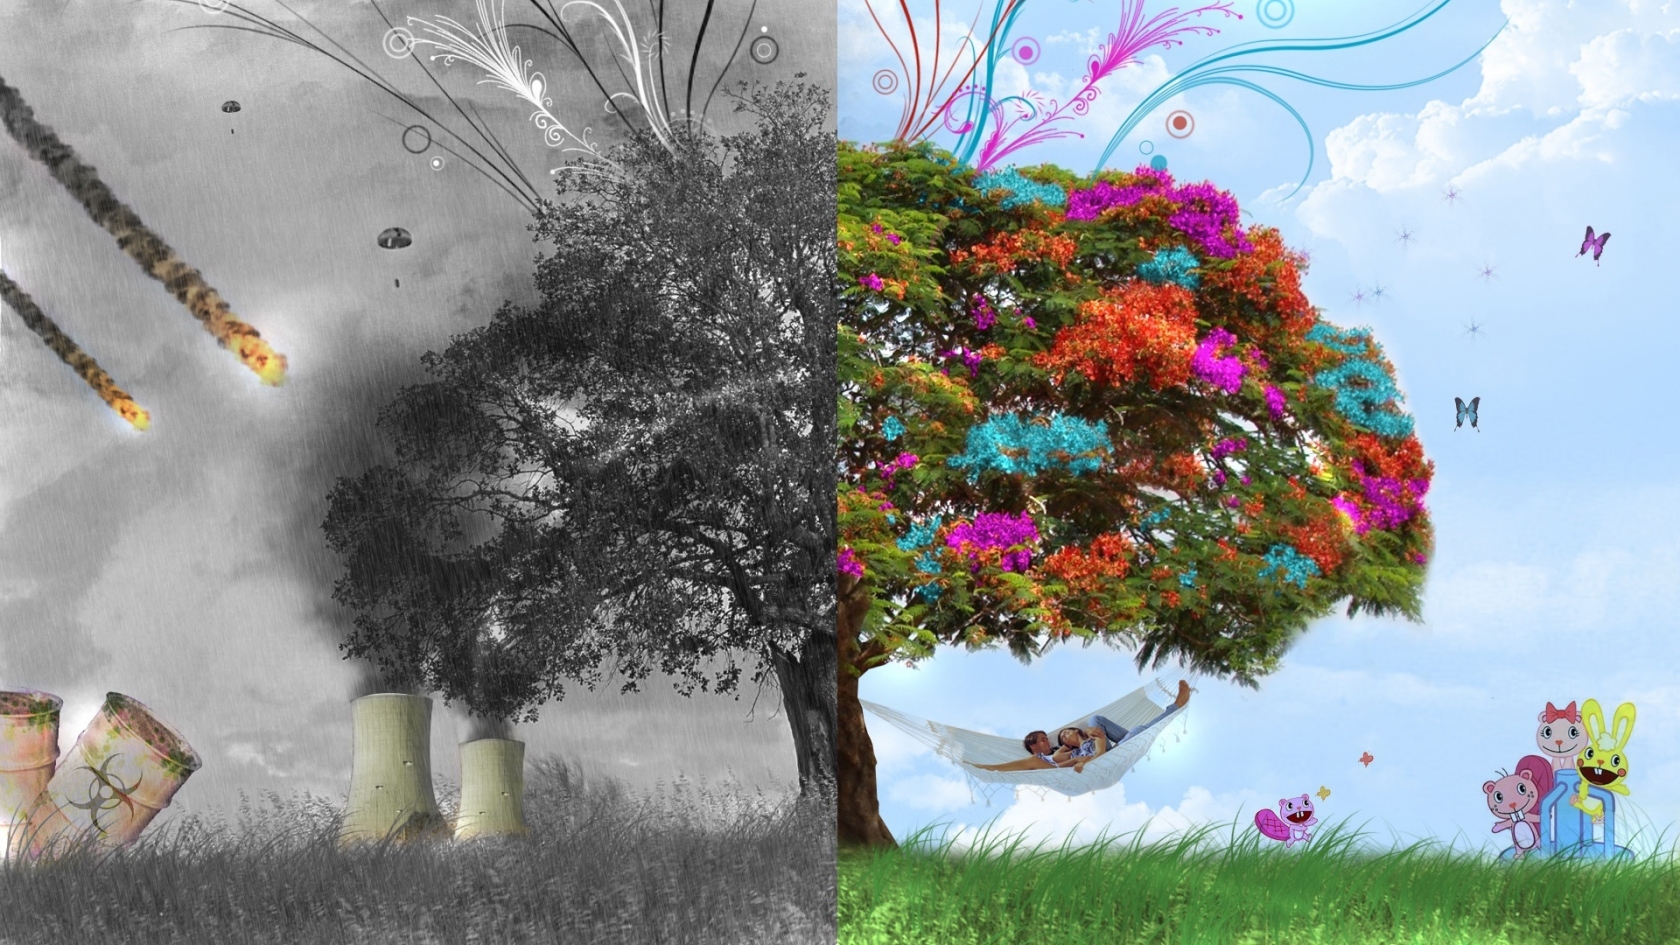 3D Tree Fantasy for 1680 x 945 HDTV resolution